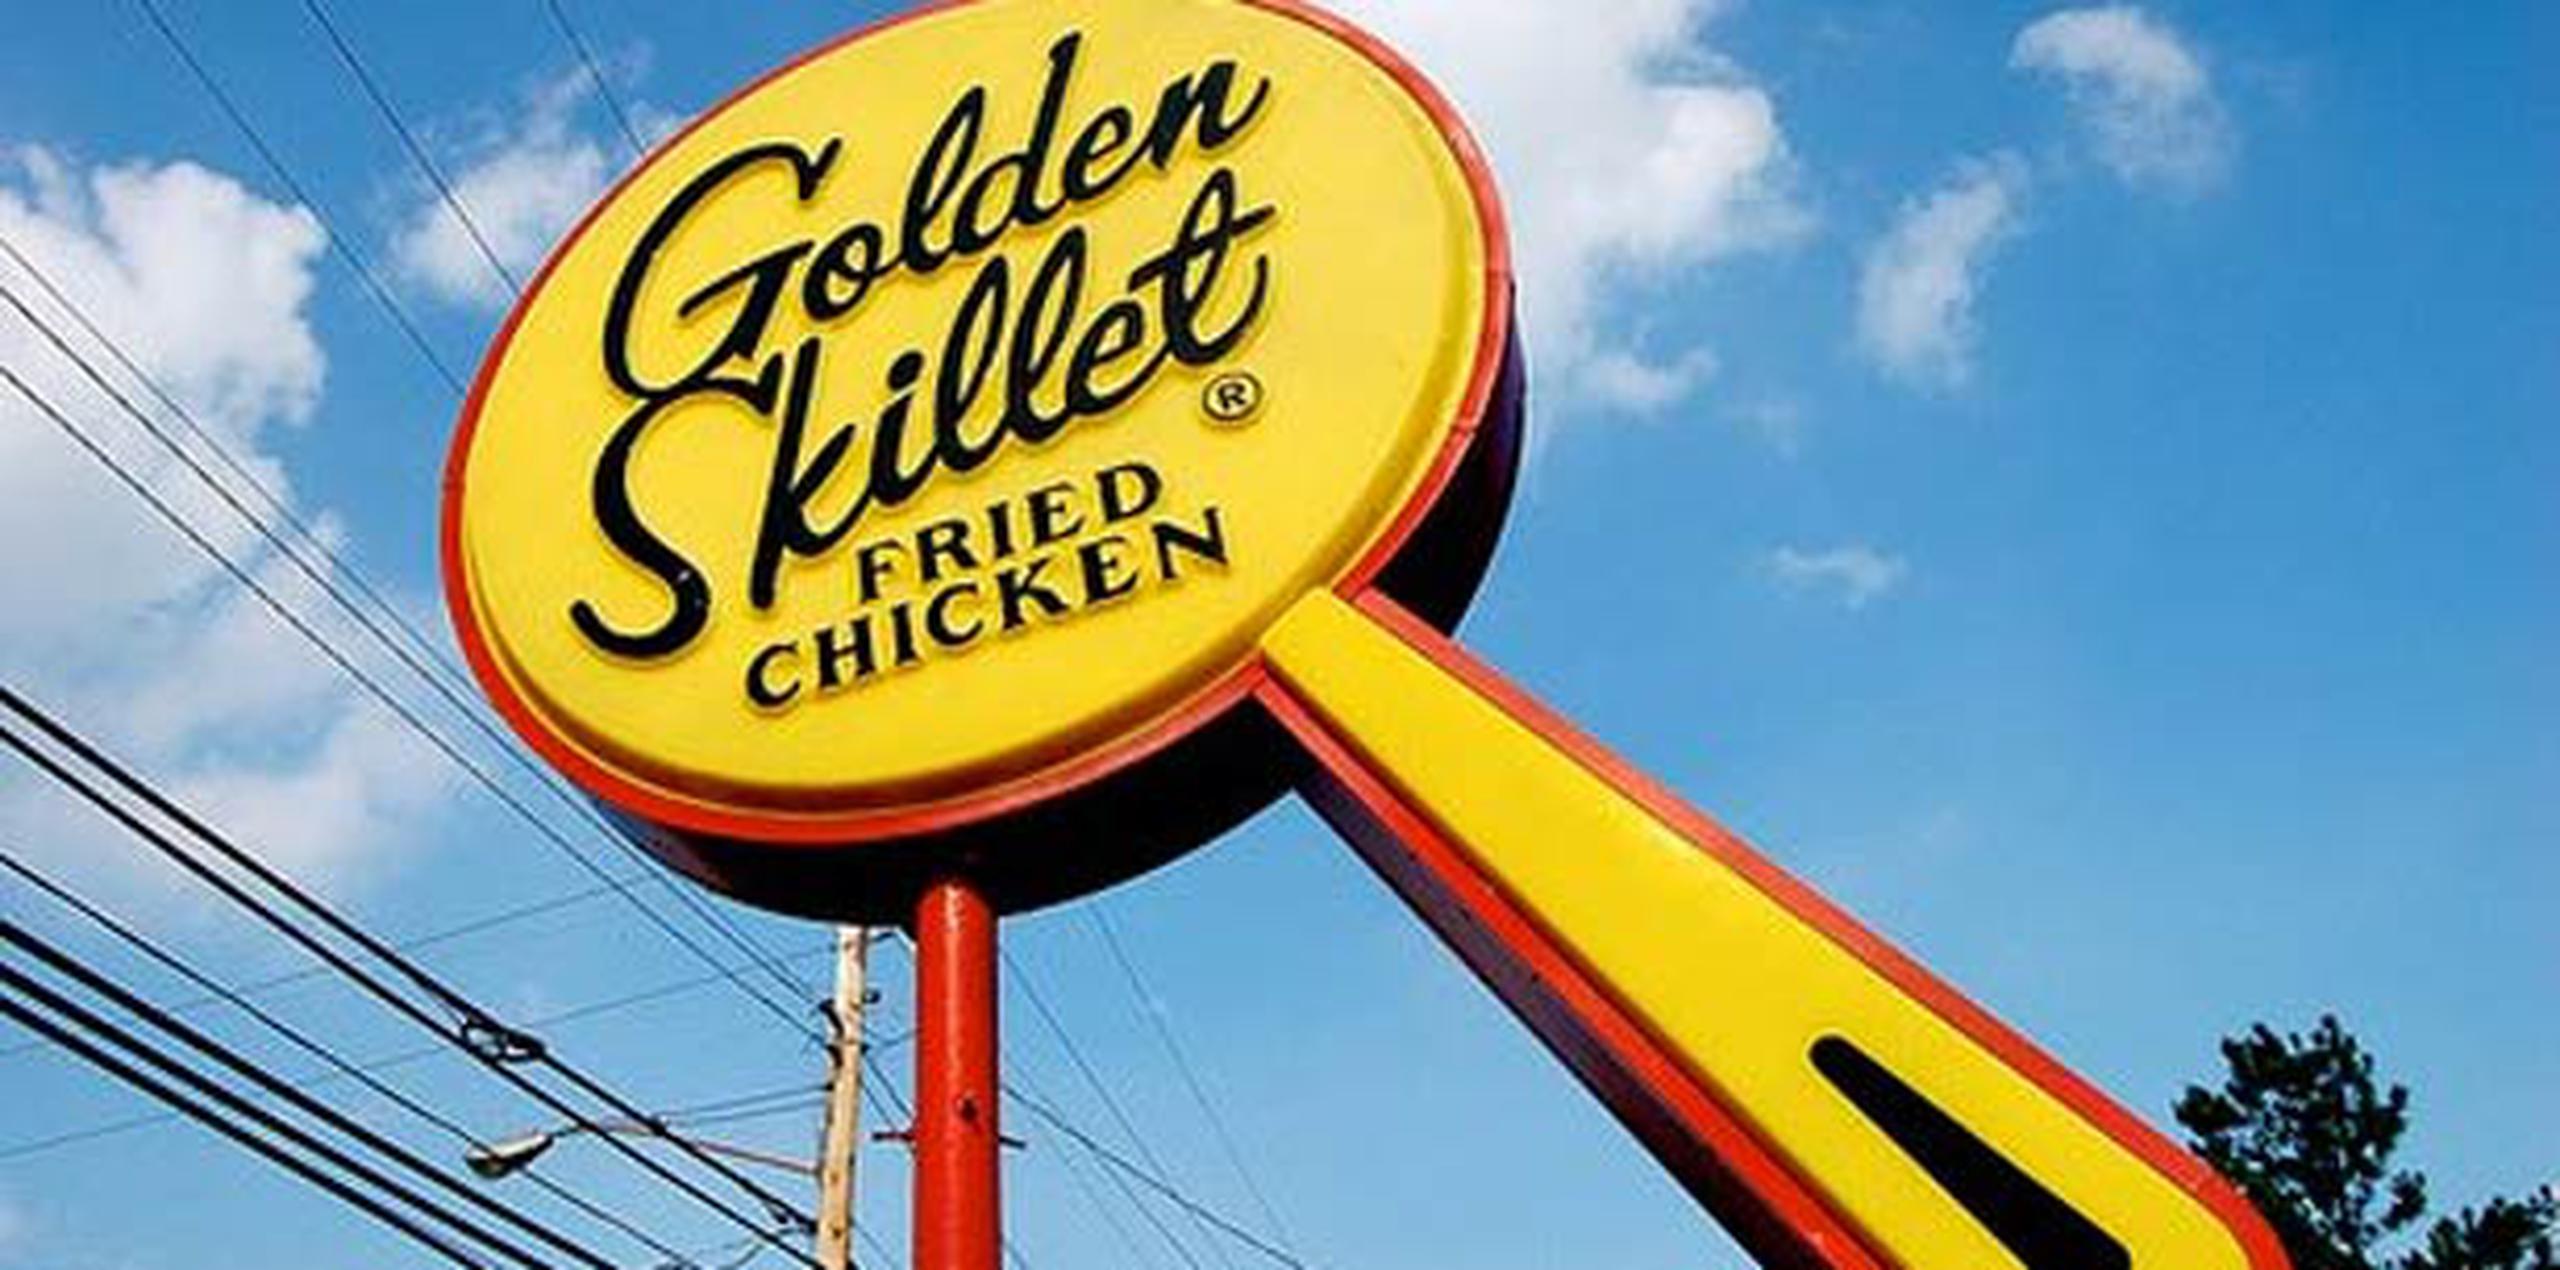 La cadena de pollo Golden Skillet era también bien reconocida por sus biscuits. (Facebook)